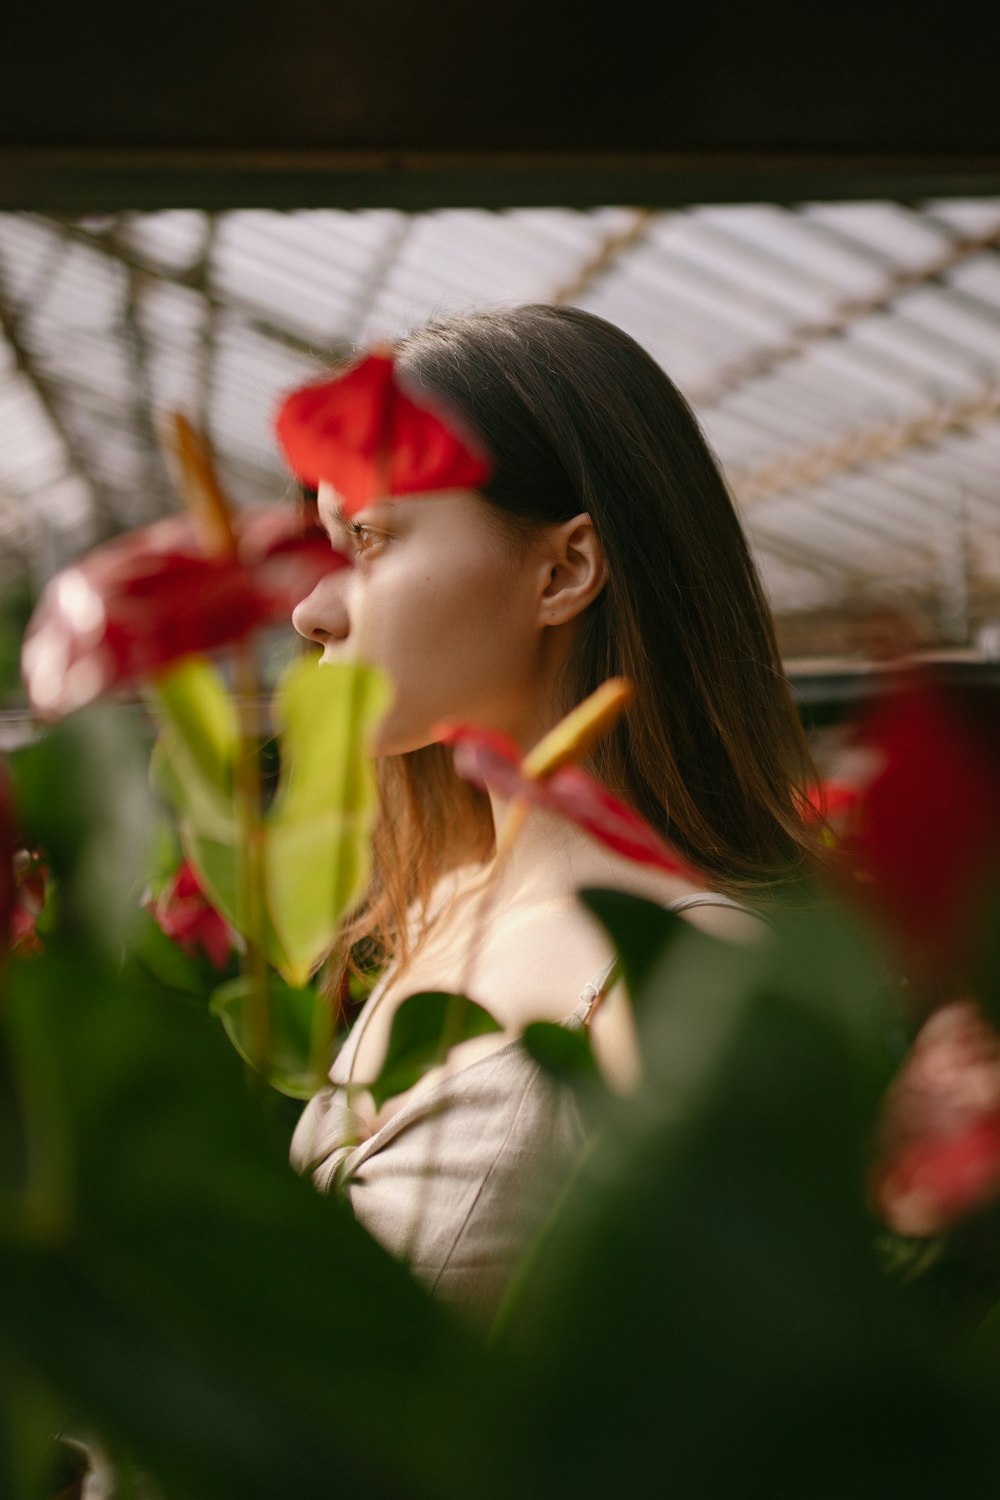 femme en chemise blanche tenant une fleur rouge pendant la journée